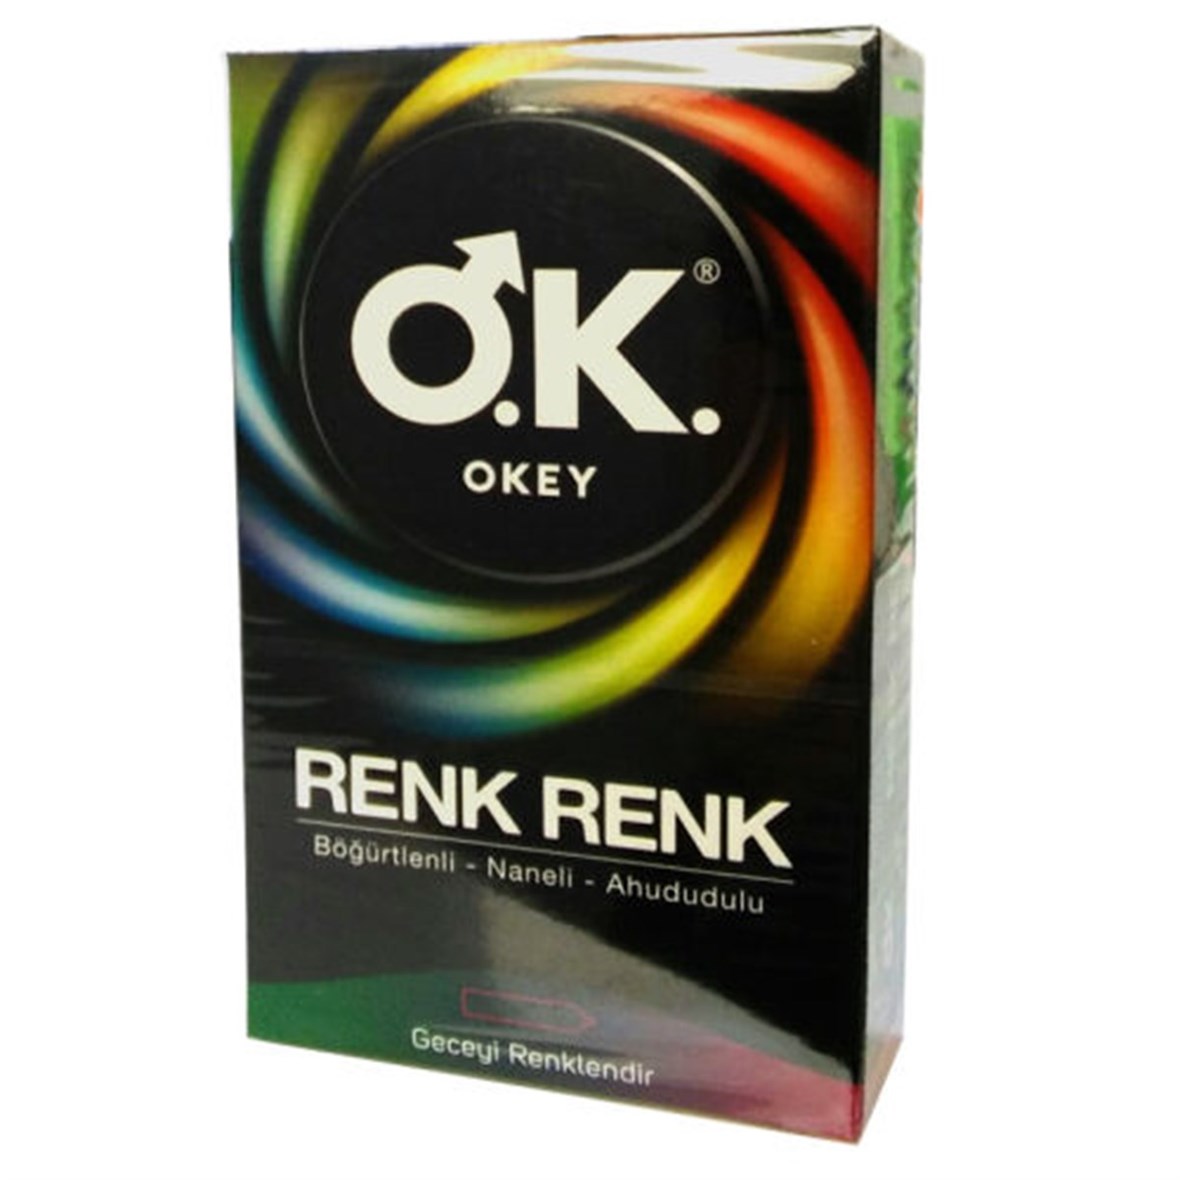 Okey Renk Renk Prezervatif 12 Adet Eczasepeti.com'da En Uygun Fiyatlar ve  Yorumlar